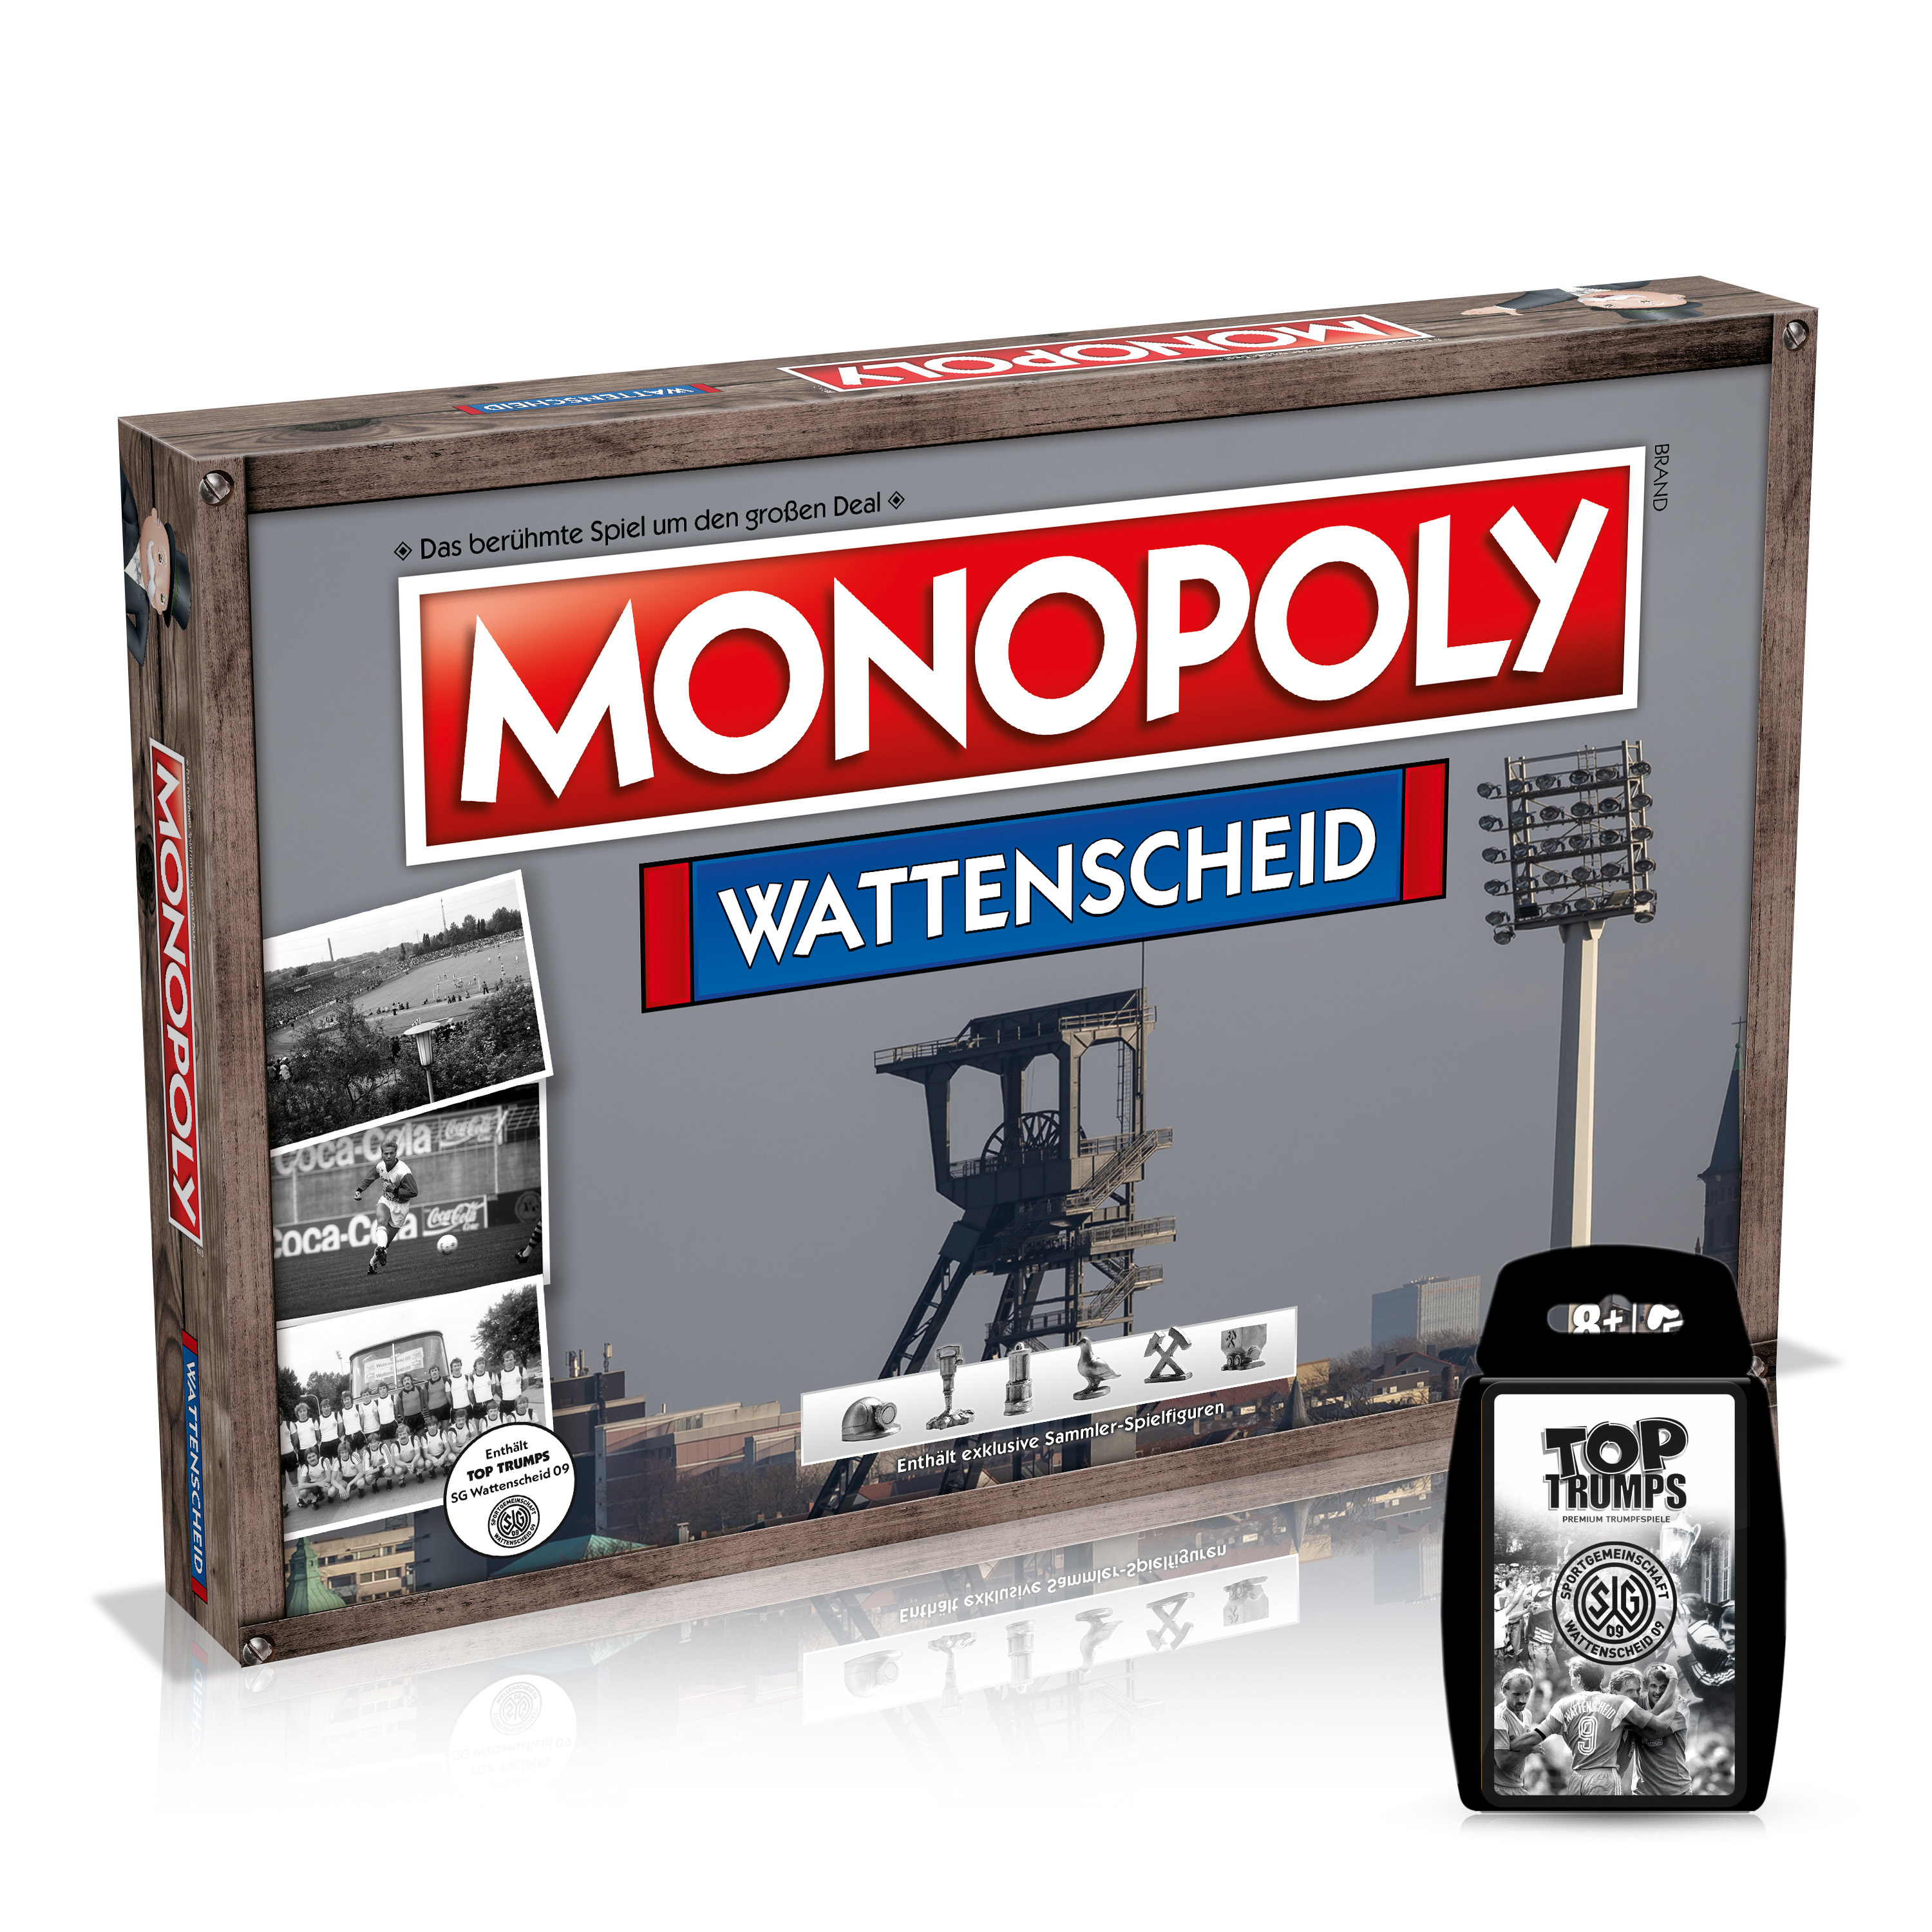 Monopoly - Wattenscheid inkl. Top Trumps Quartettspiel